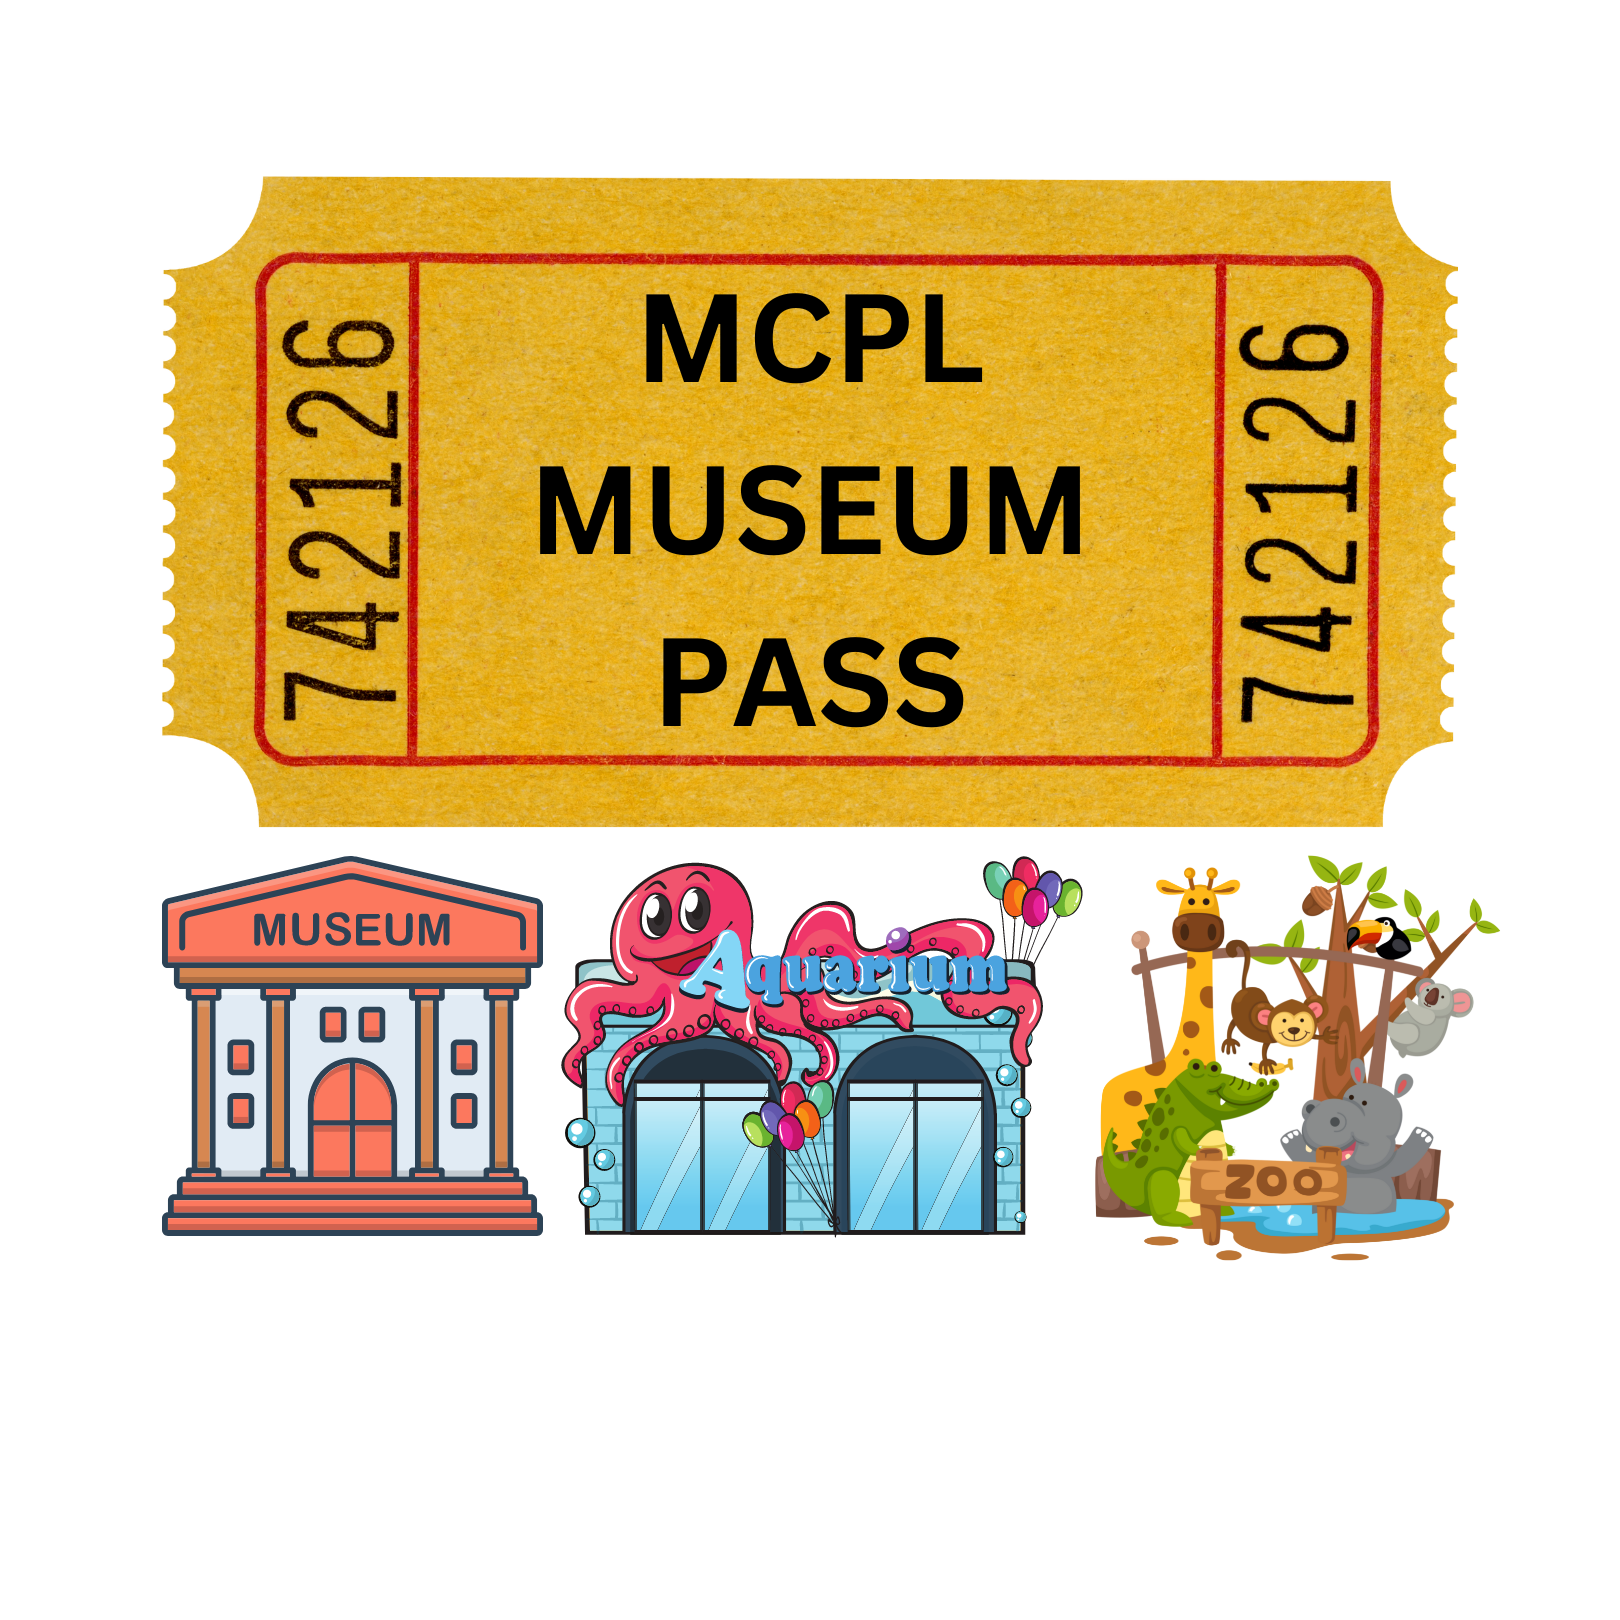 MCPL MUSEUM PASS